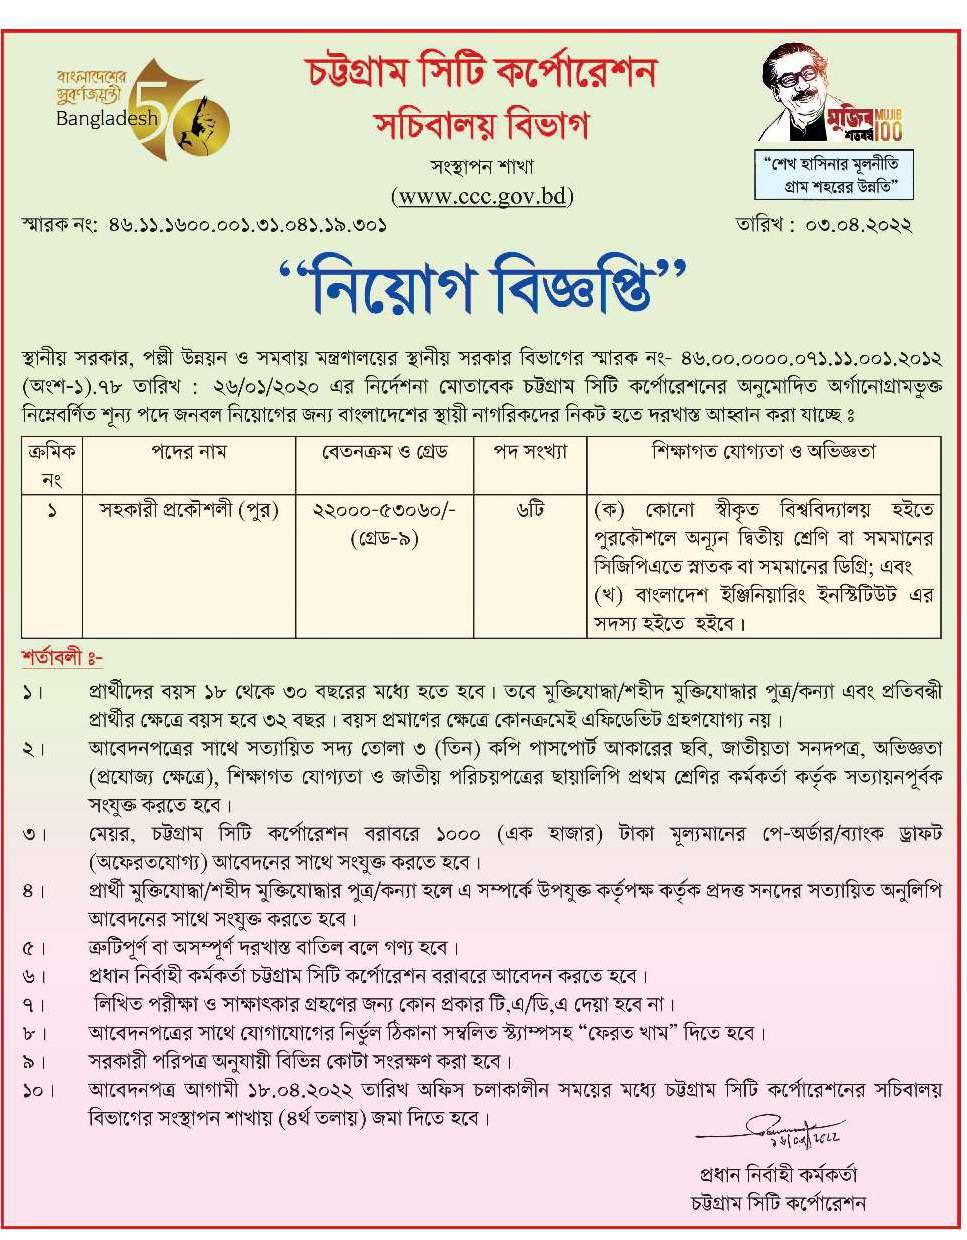 চট্টগ্রাম সিটি কর্পোরেশন নিয়োগ বিজ্ঞপ্তি ২০২২ | Chittagong city corporation job circular 2022